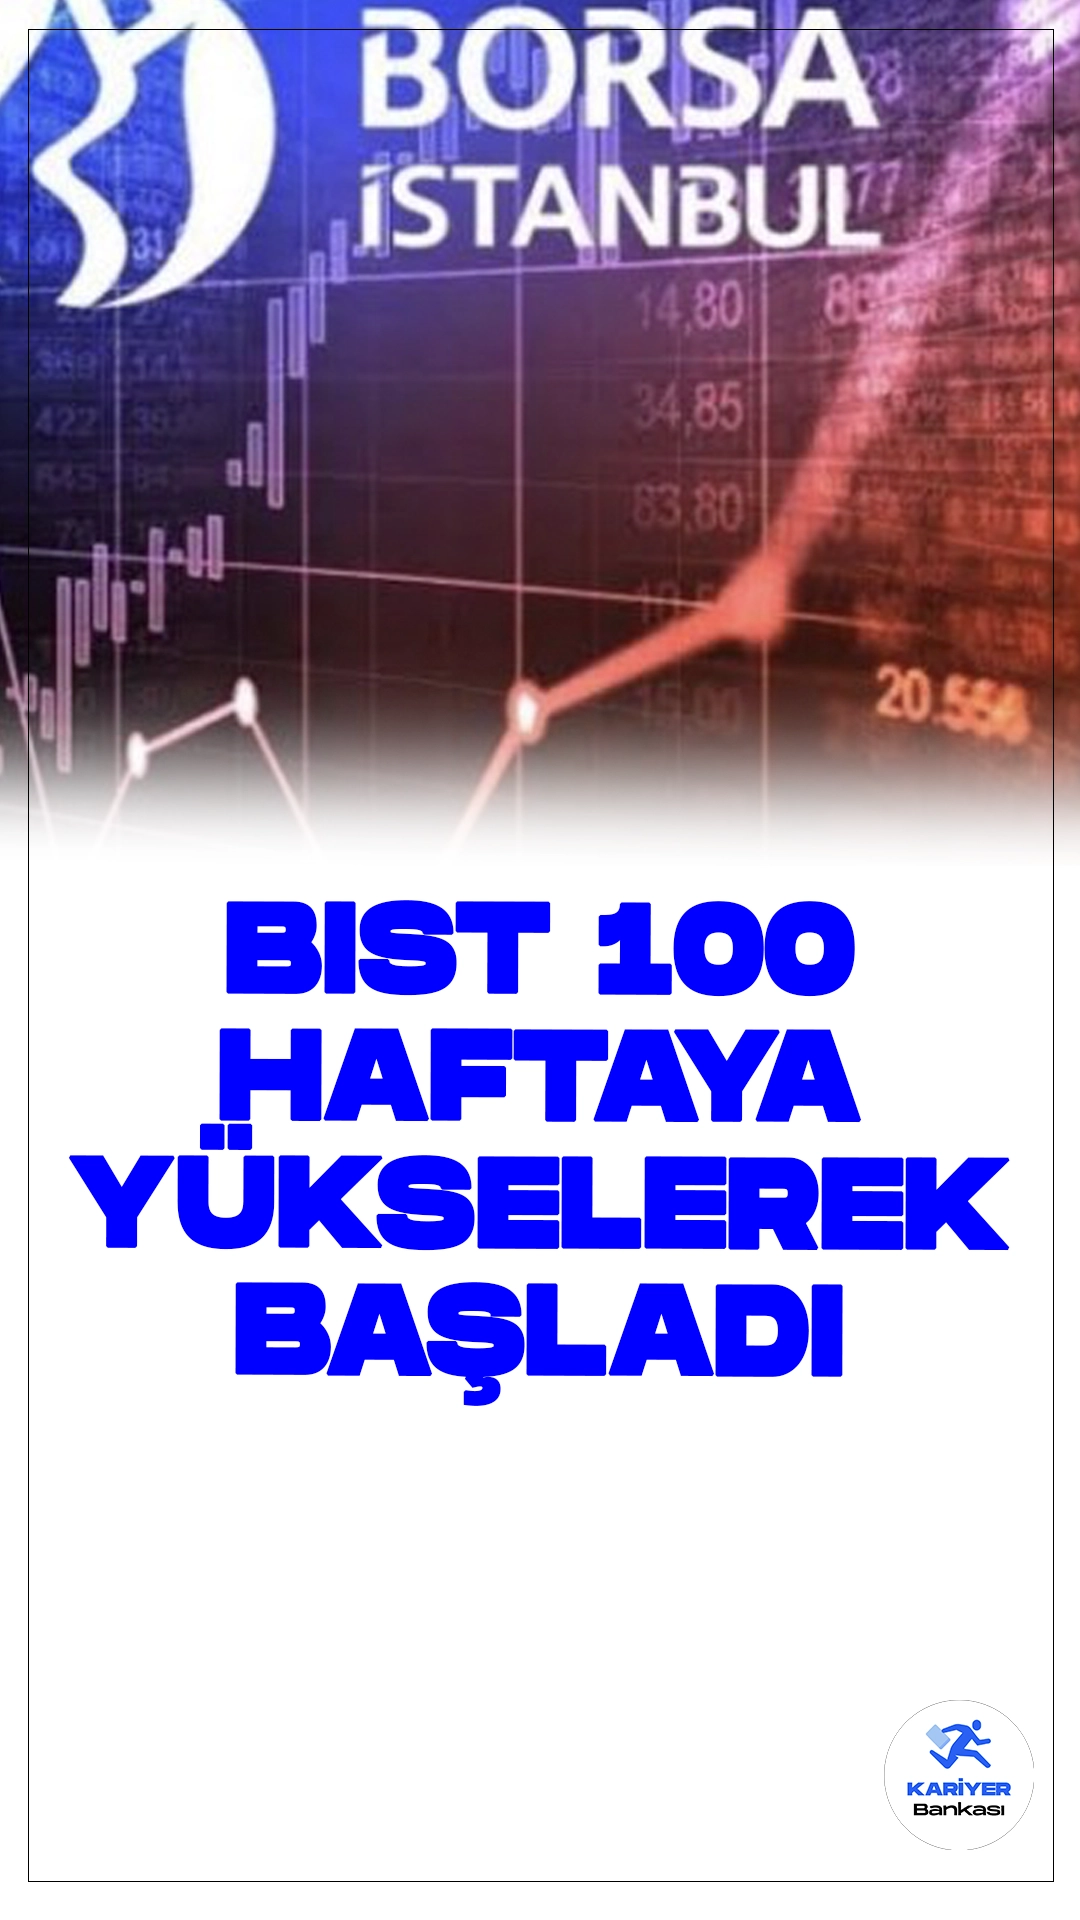 BIST 100 Endeksi Haftaya Yükselişle Başladı.Borsa İstanbul'da BIST 100 endeksi, haftaya yüzde 0,23 yükselişle 10.701,24 puandan başladı.